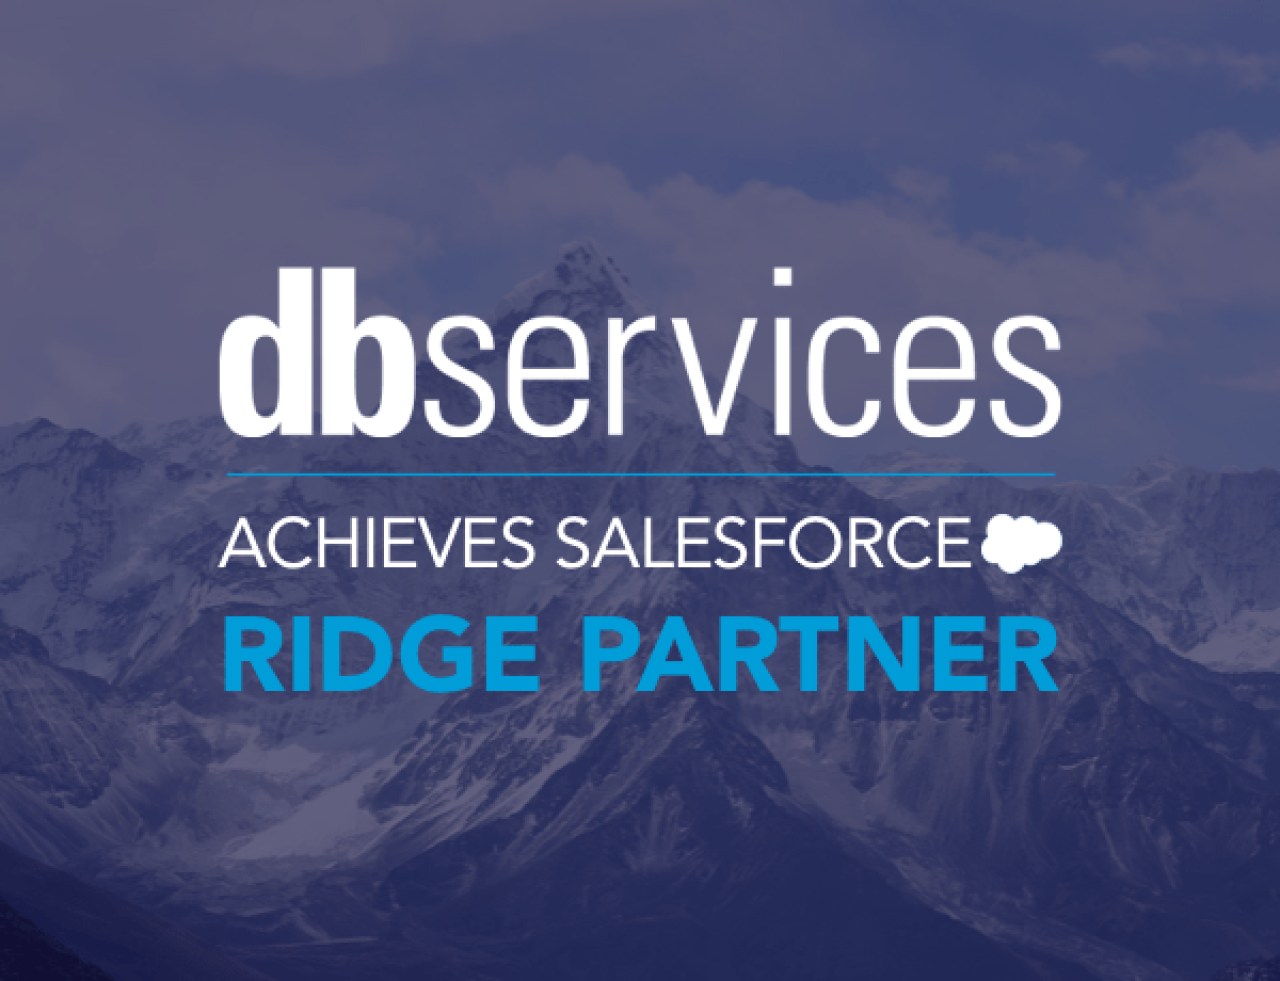 db services achieves salesforce ridge partner.